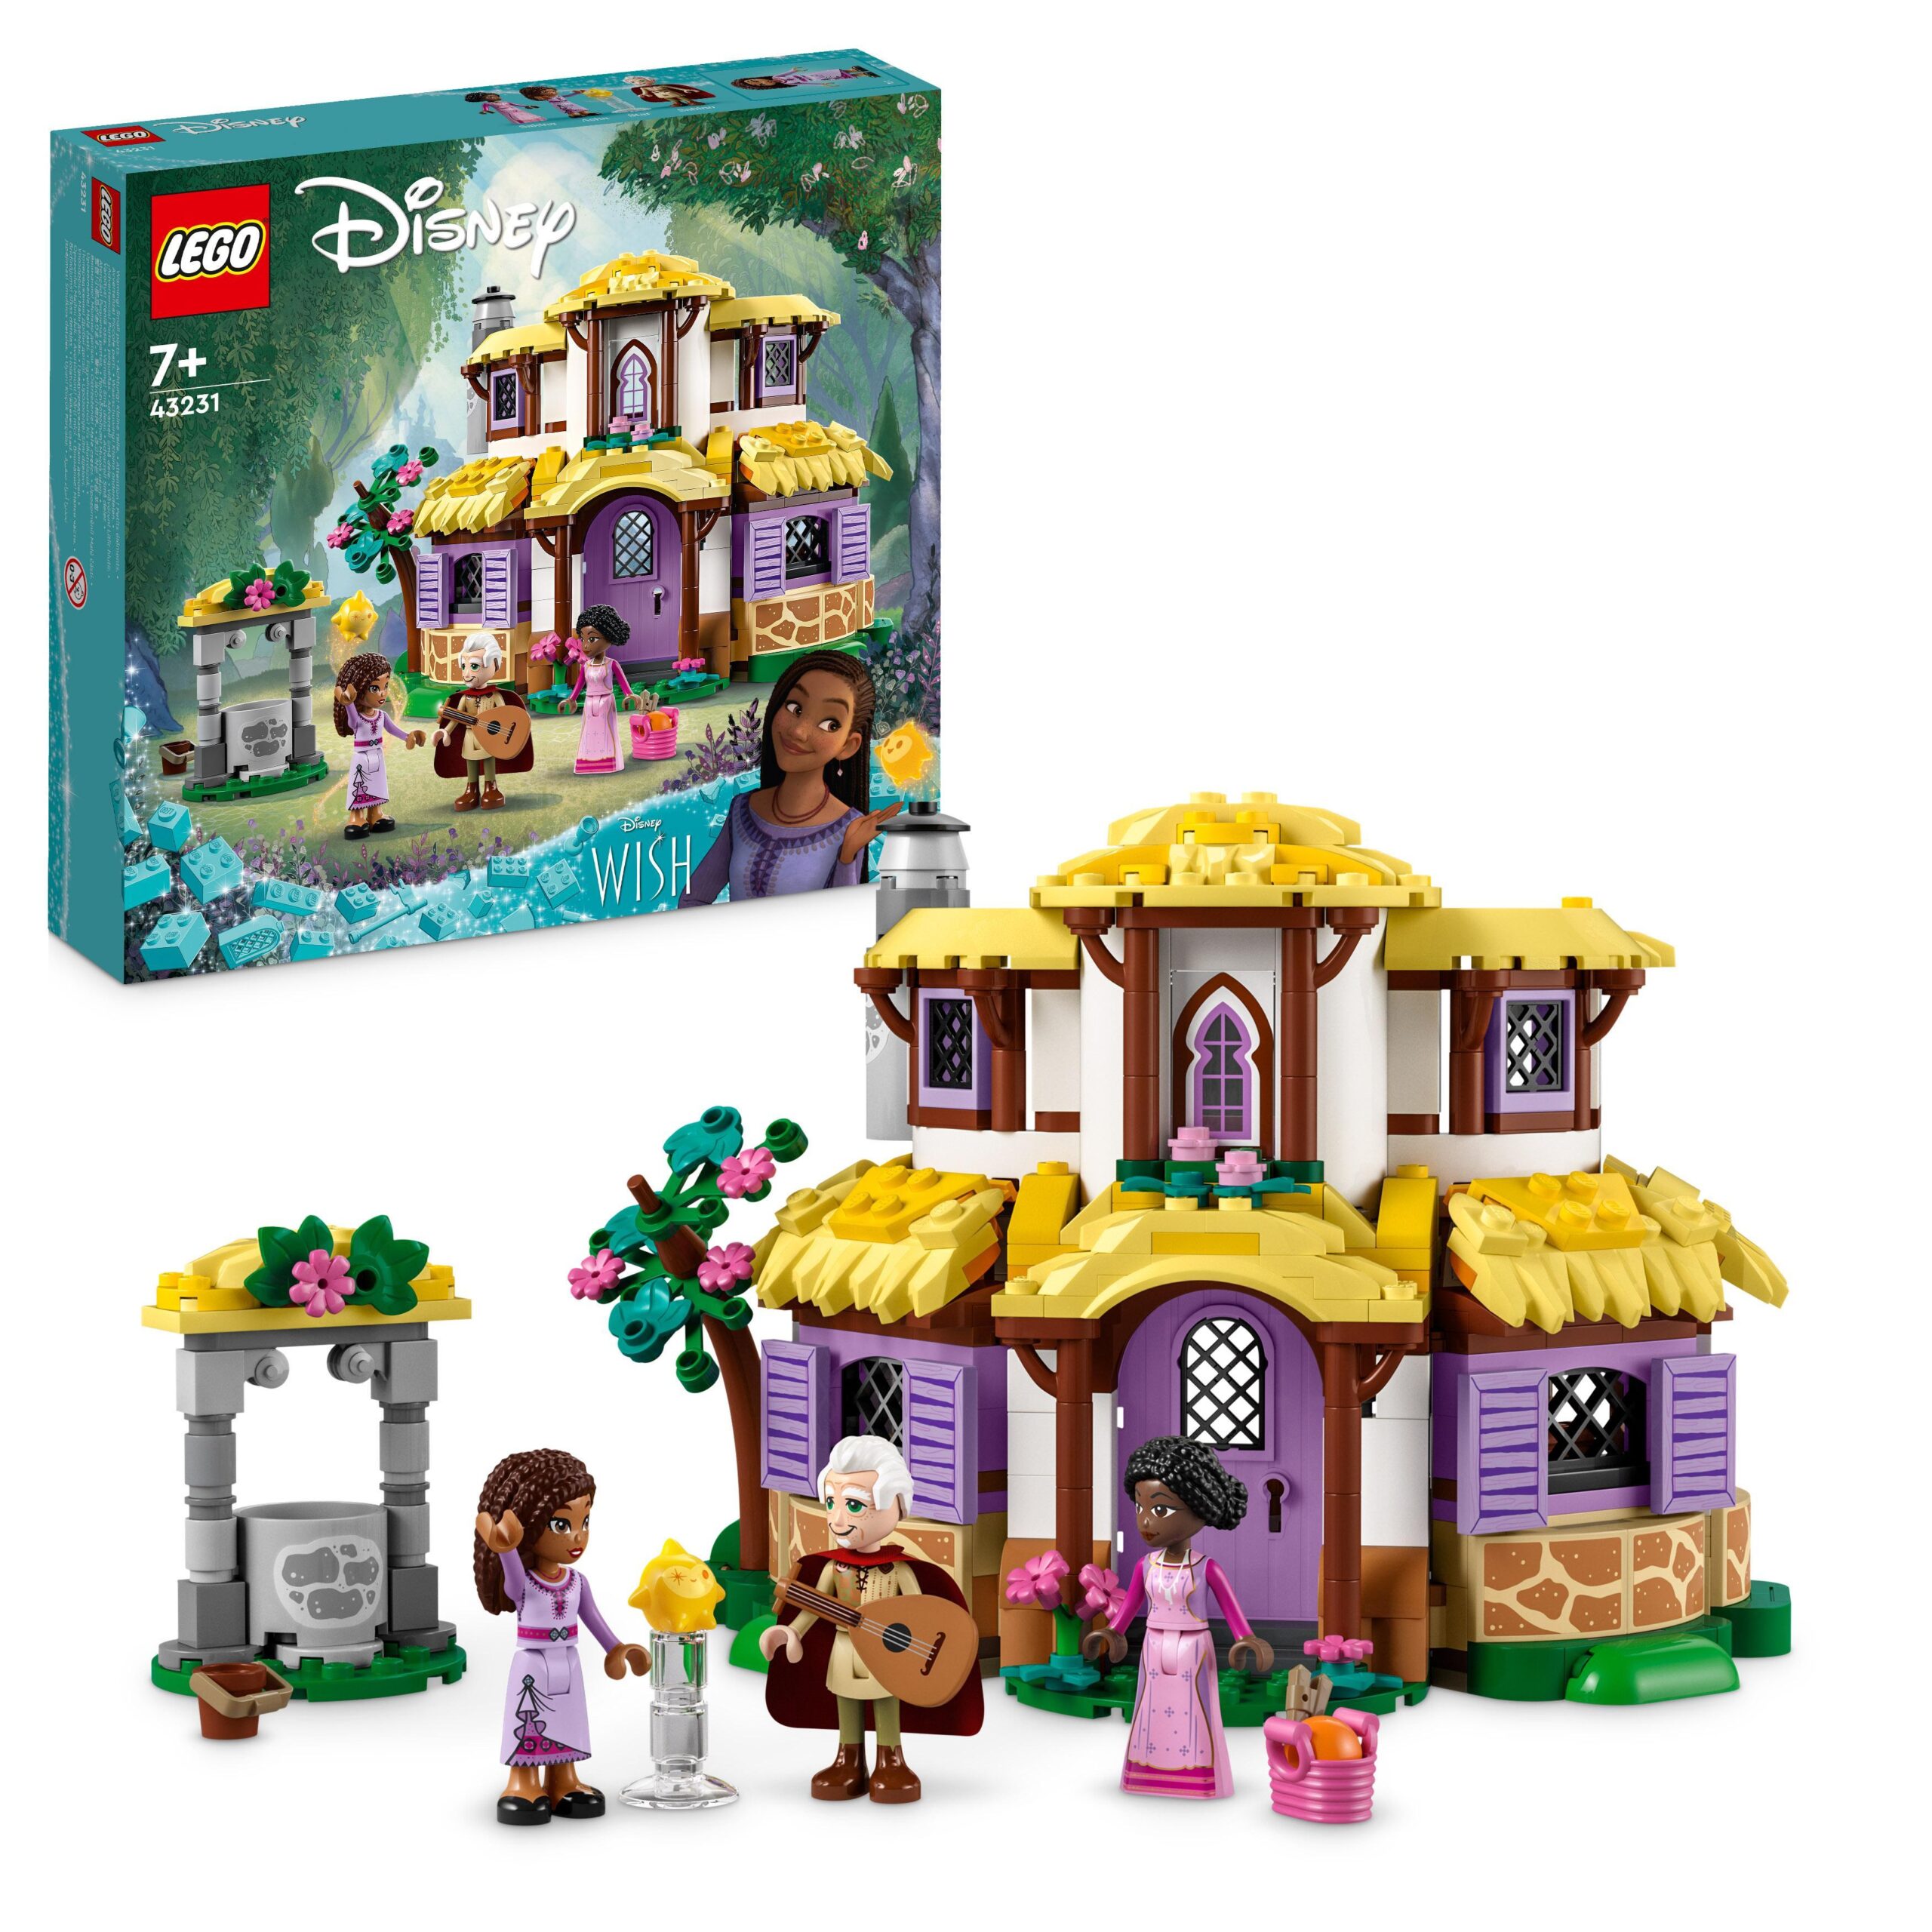 Lego disney wish 43231 il cottage di asha, casa delle bambole giocattolo dal film wish, idea regalo per bambine e bambini - DISNEY PRINCESS, LEGO DISNEY PRINCESS